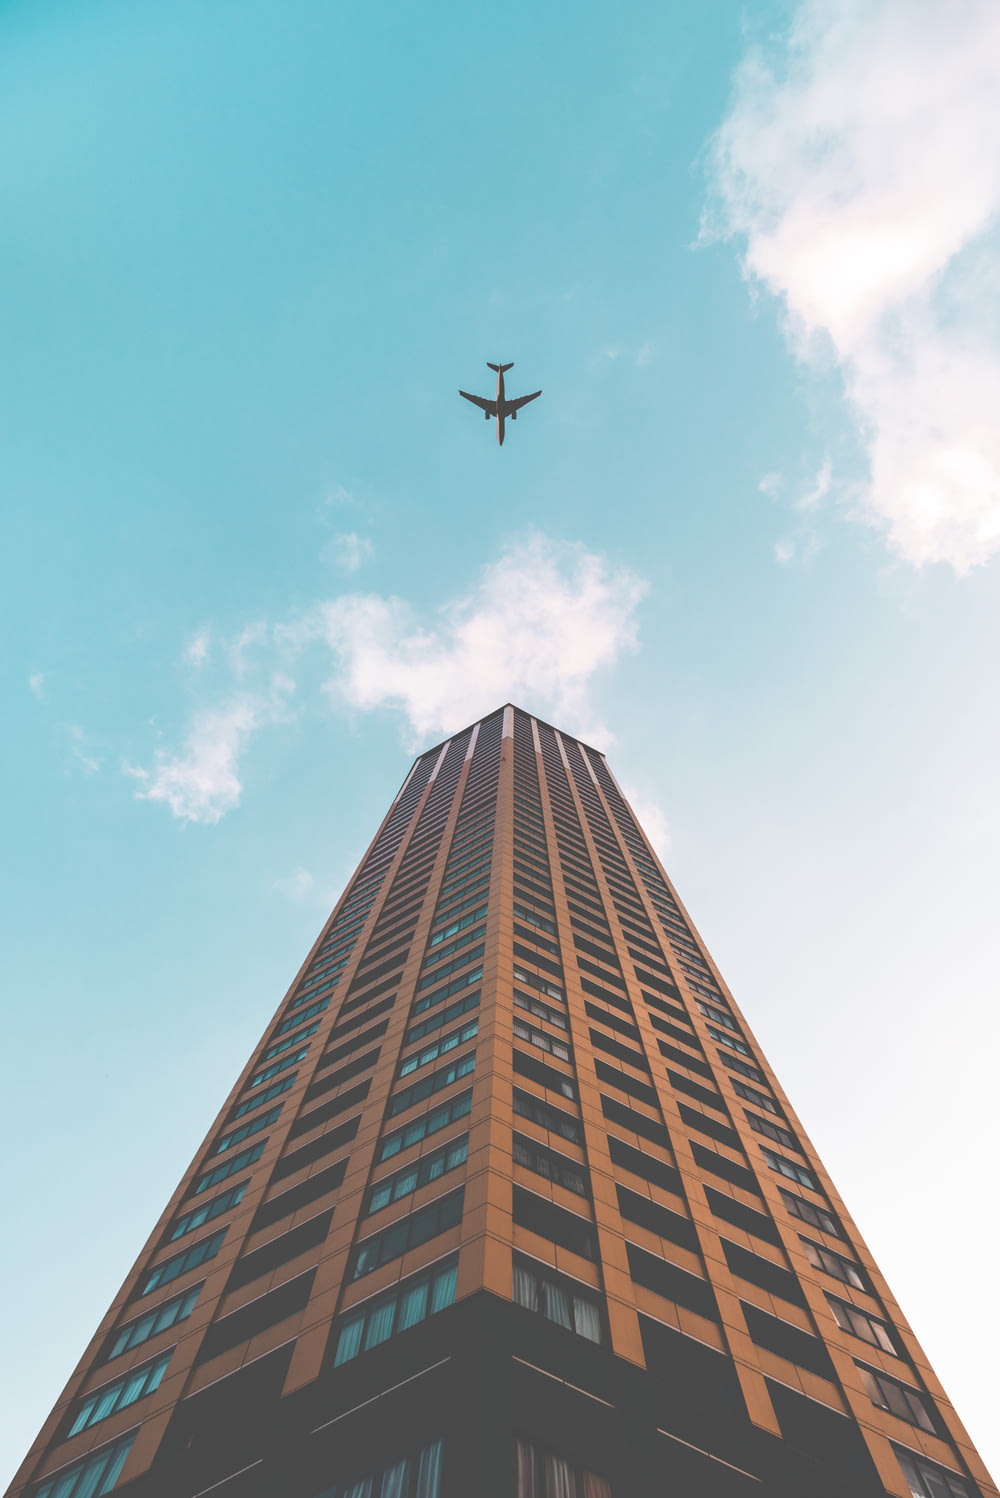 Foto da vista inferior do avião voando acima do edifício do arranha-céu